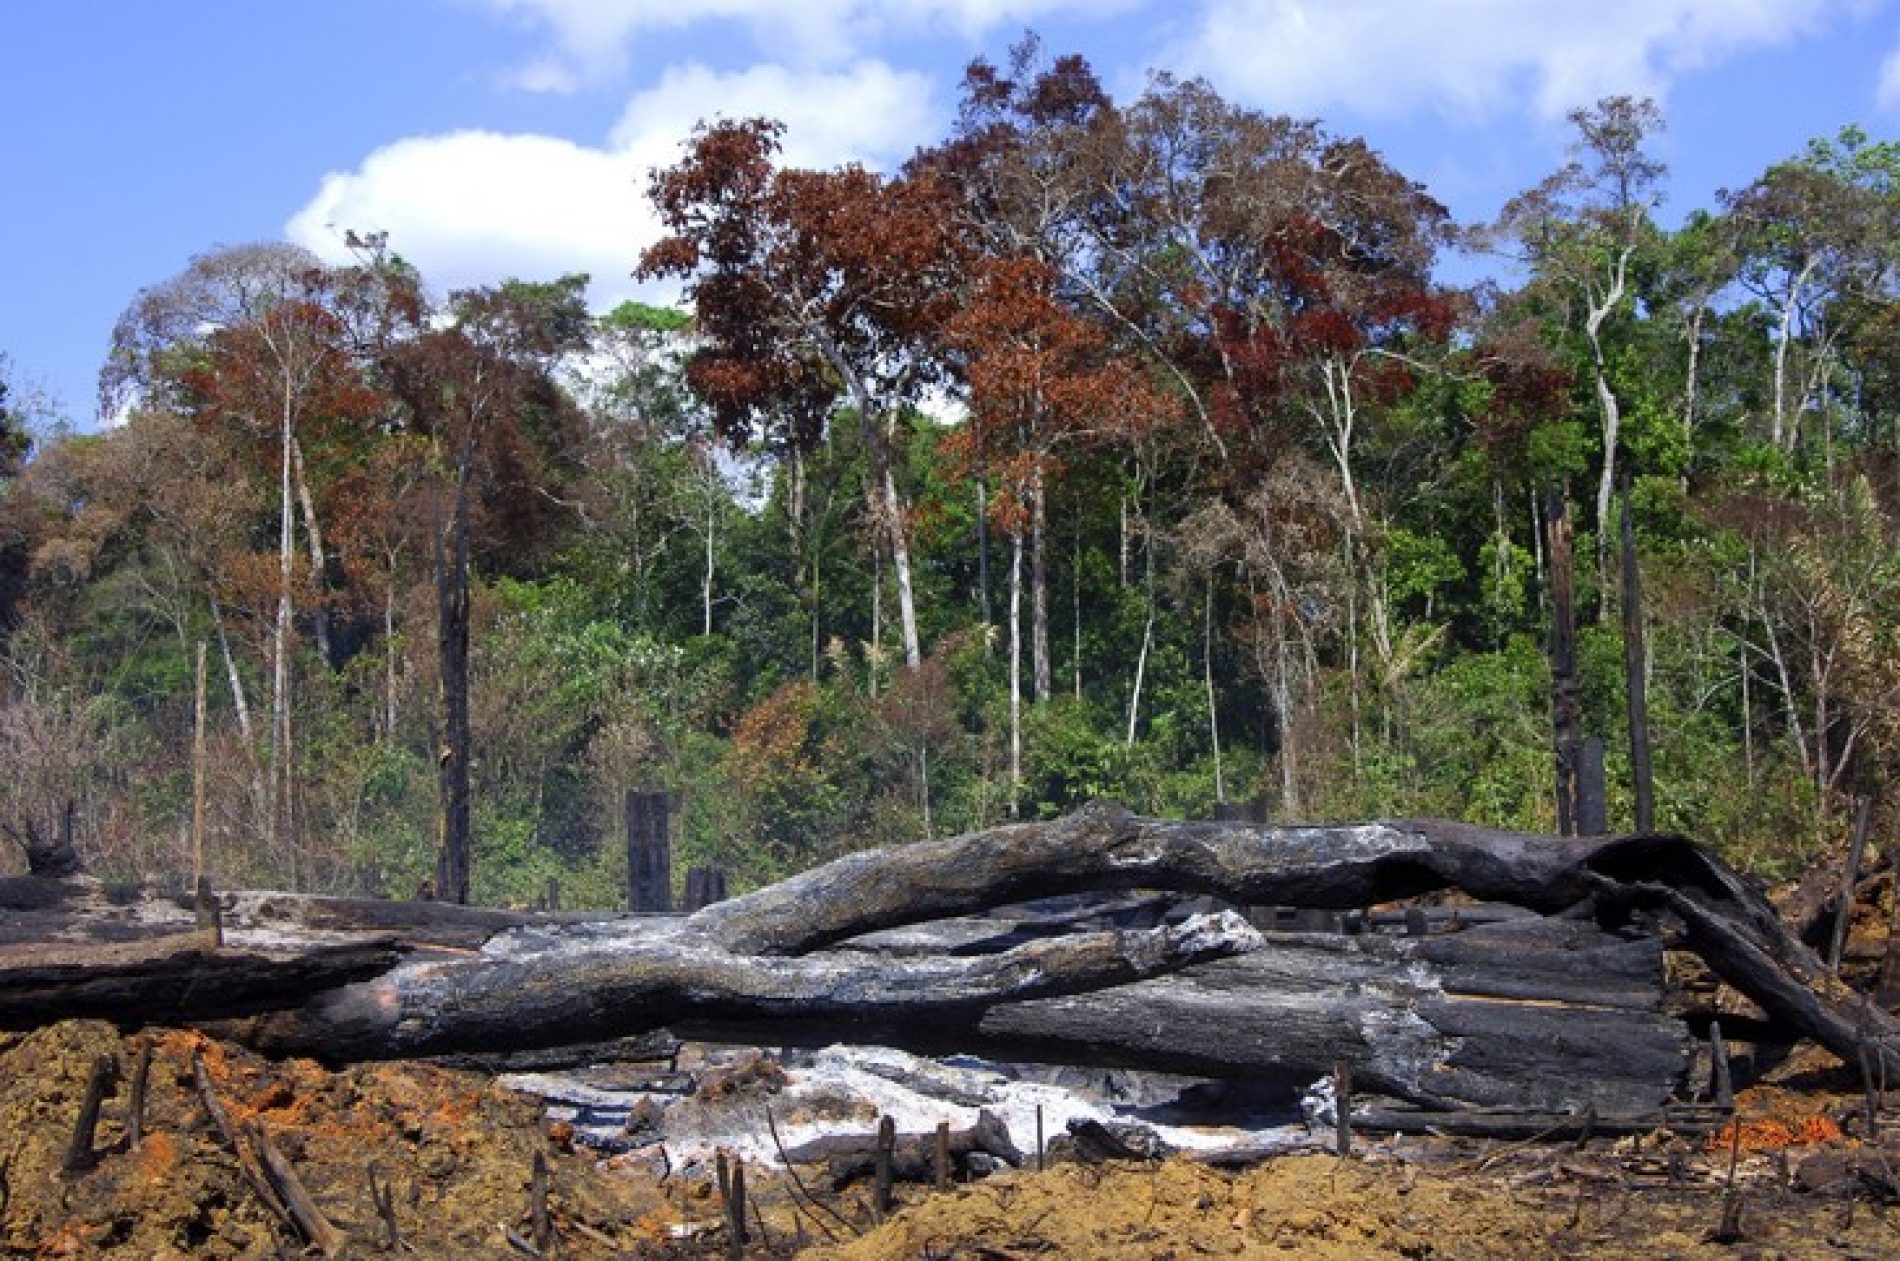 Brésil: 20 % des exportations vers l’Europe proviennent de la déforestation illégale